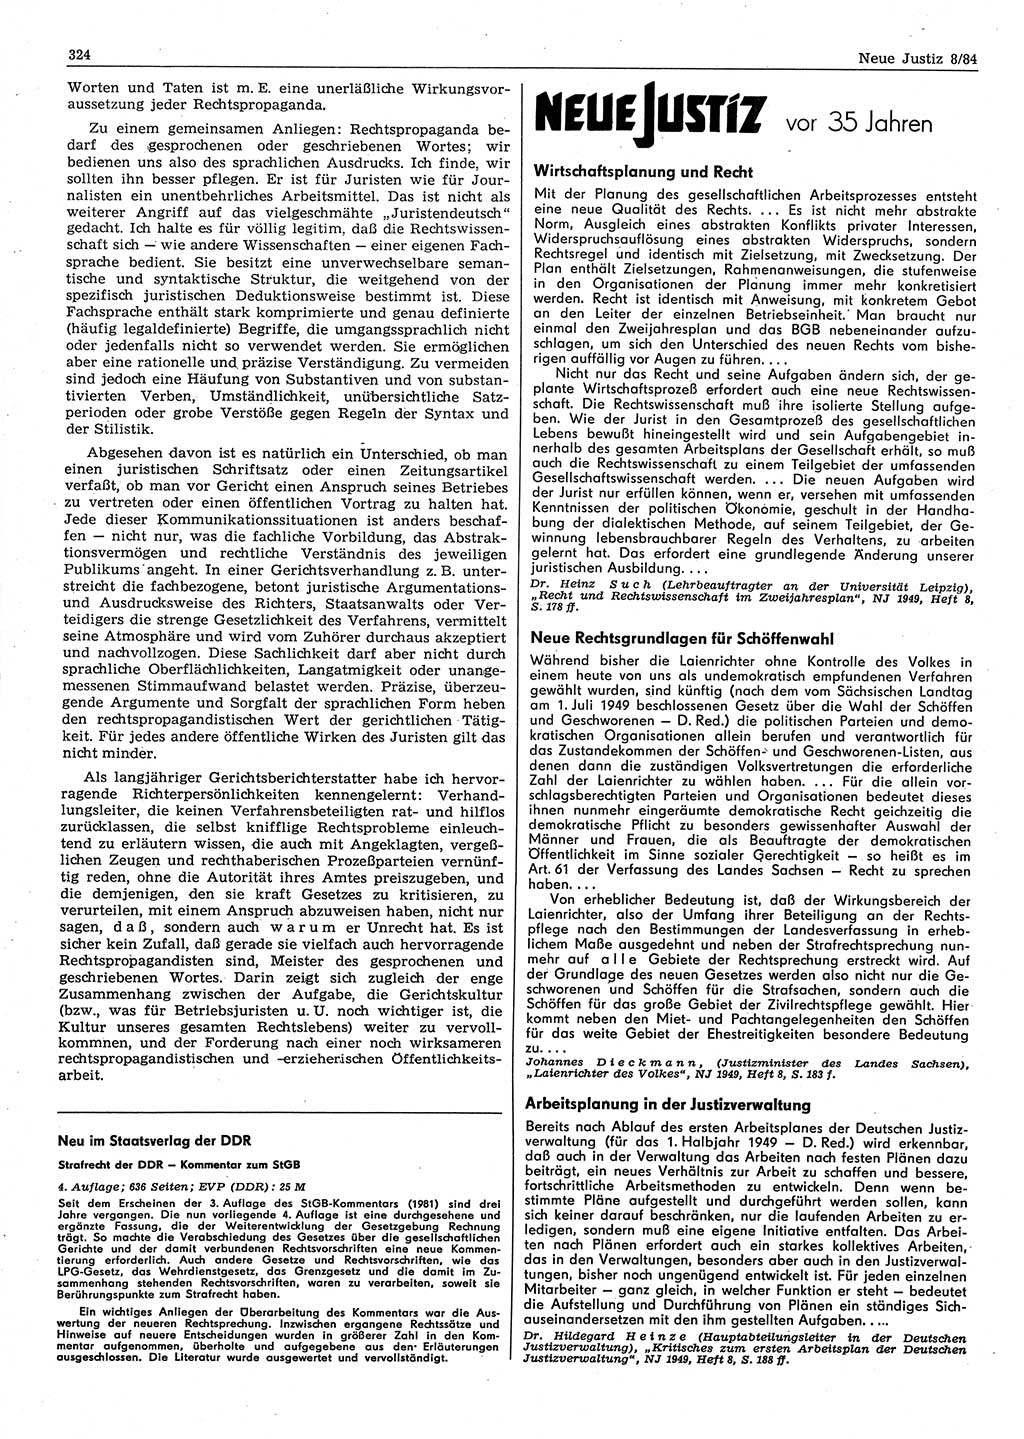 Neue Justiz (NJ), Zeitschrift für sozialistisches Recht und Gesetzlichkeit [Deutsche Demokratische Republik (DDR)], 38. Jahrgang 1984, Seite 324 (NJ DDR 1984, S. 324)